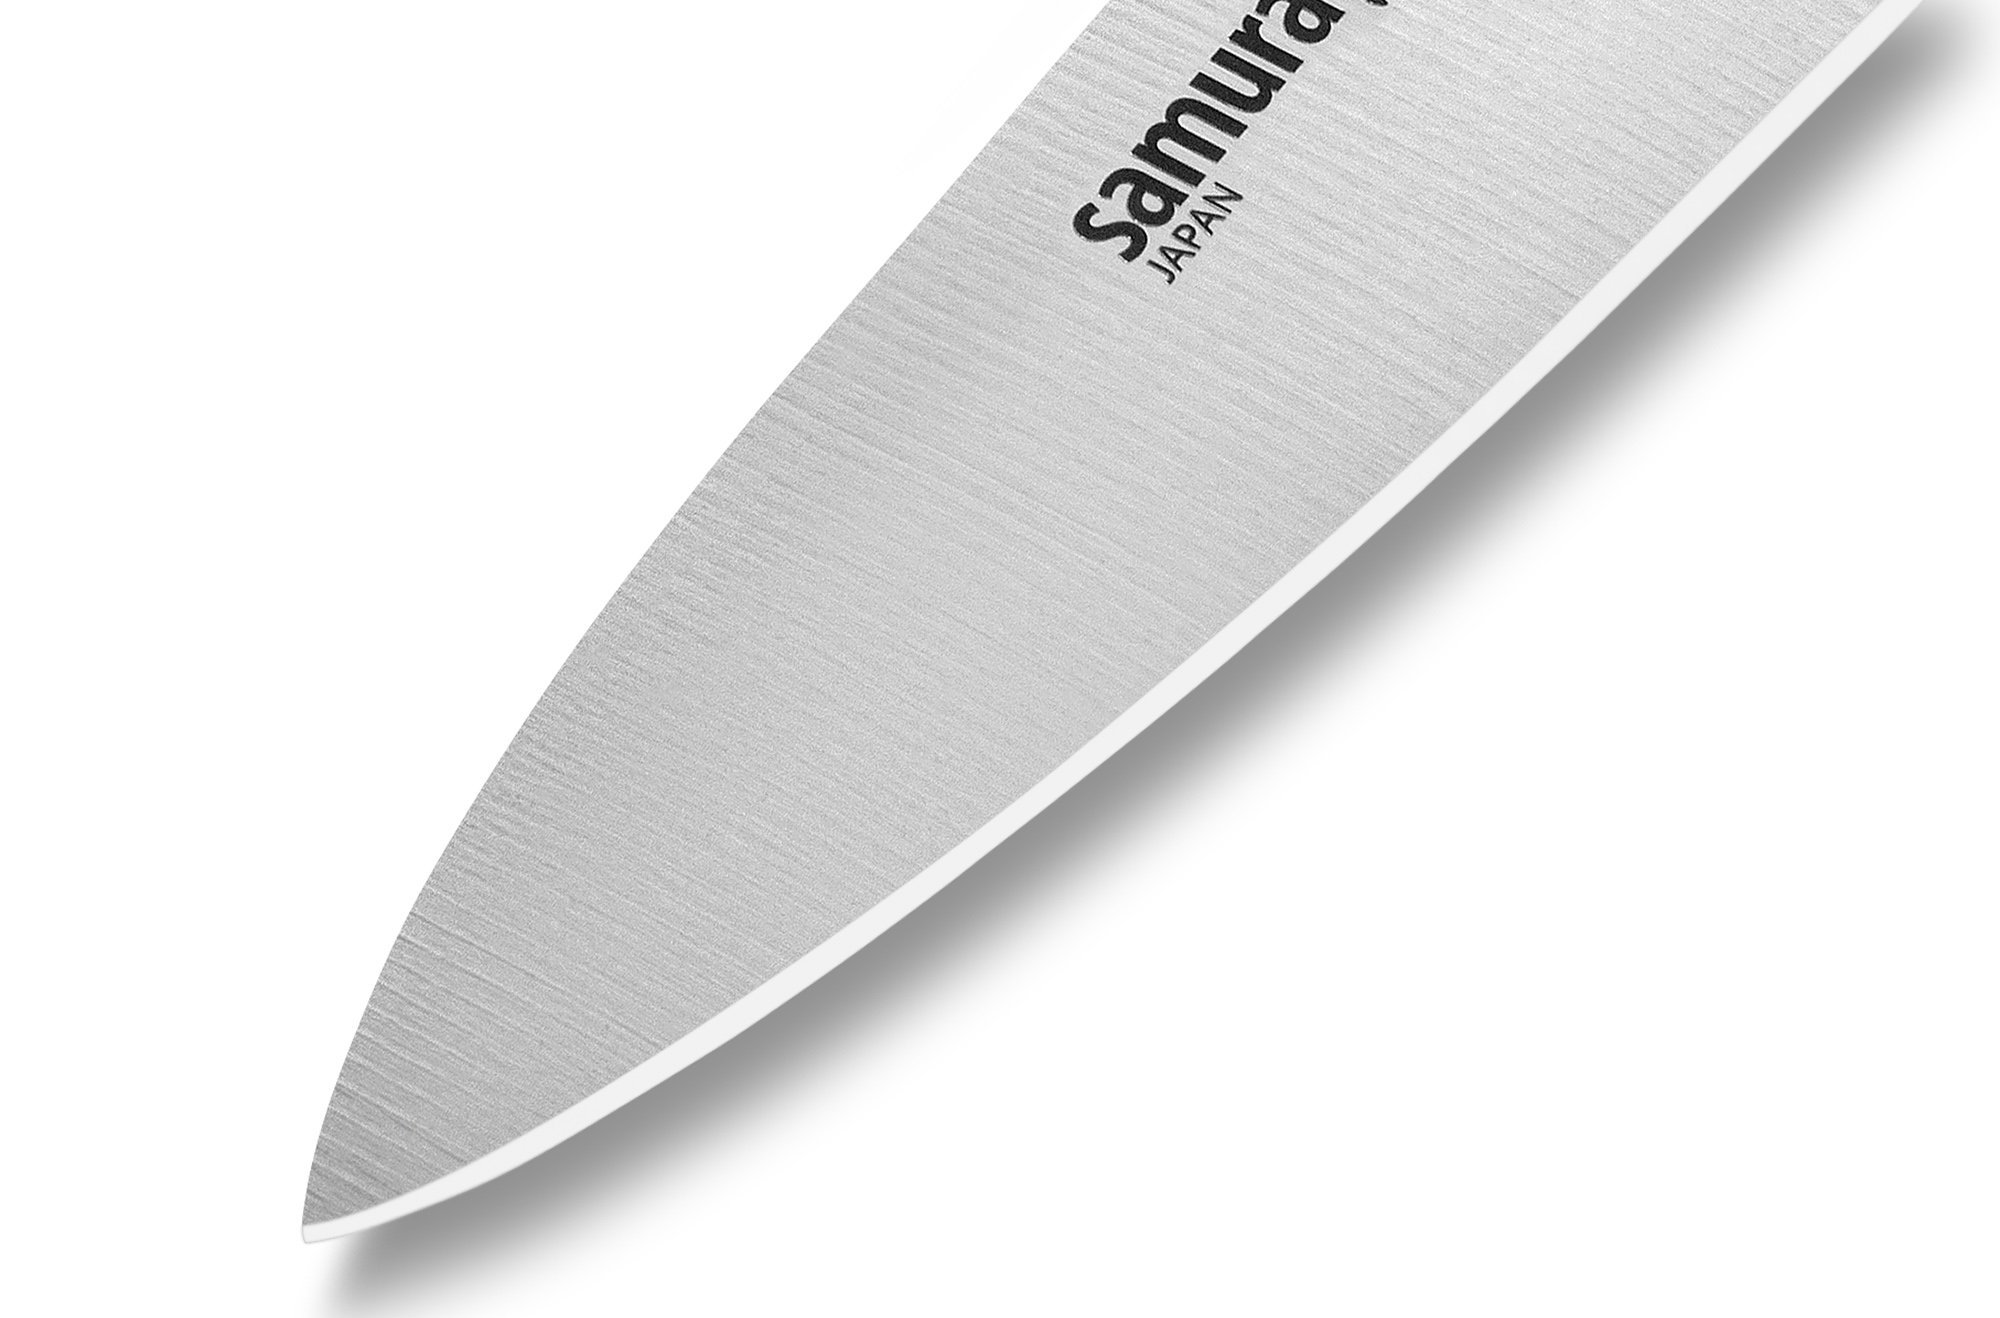 Нож кухонный овощной Samura GOLF - SG-0010, сталь AUS-8, рукоять полипропилен, 98 мм - фото 6